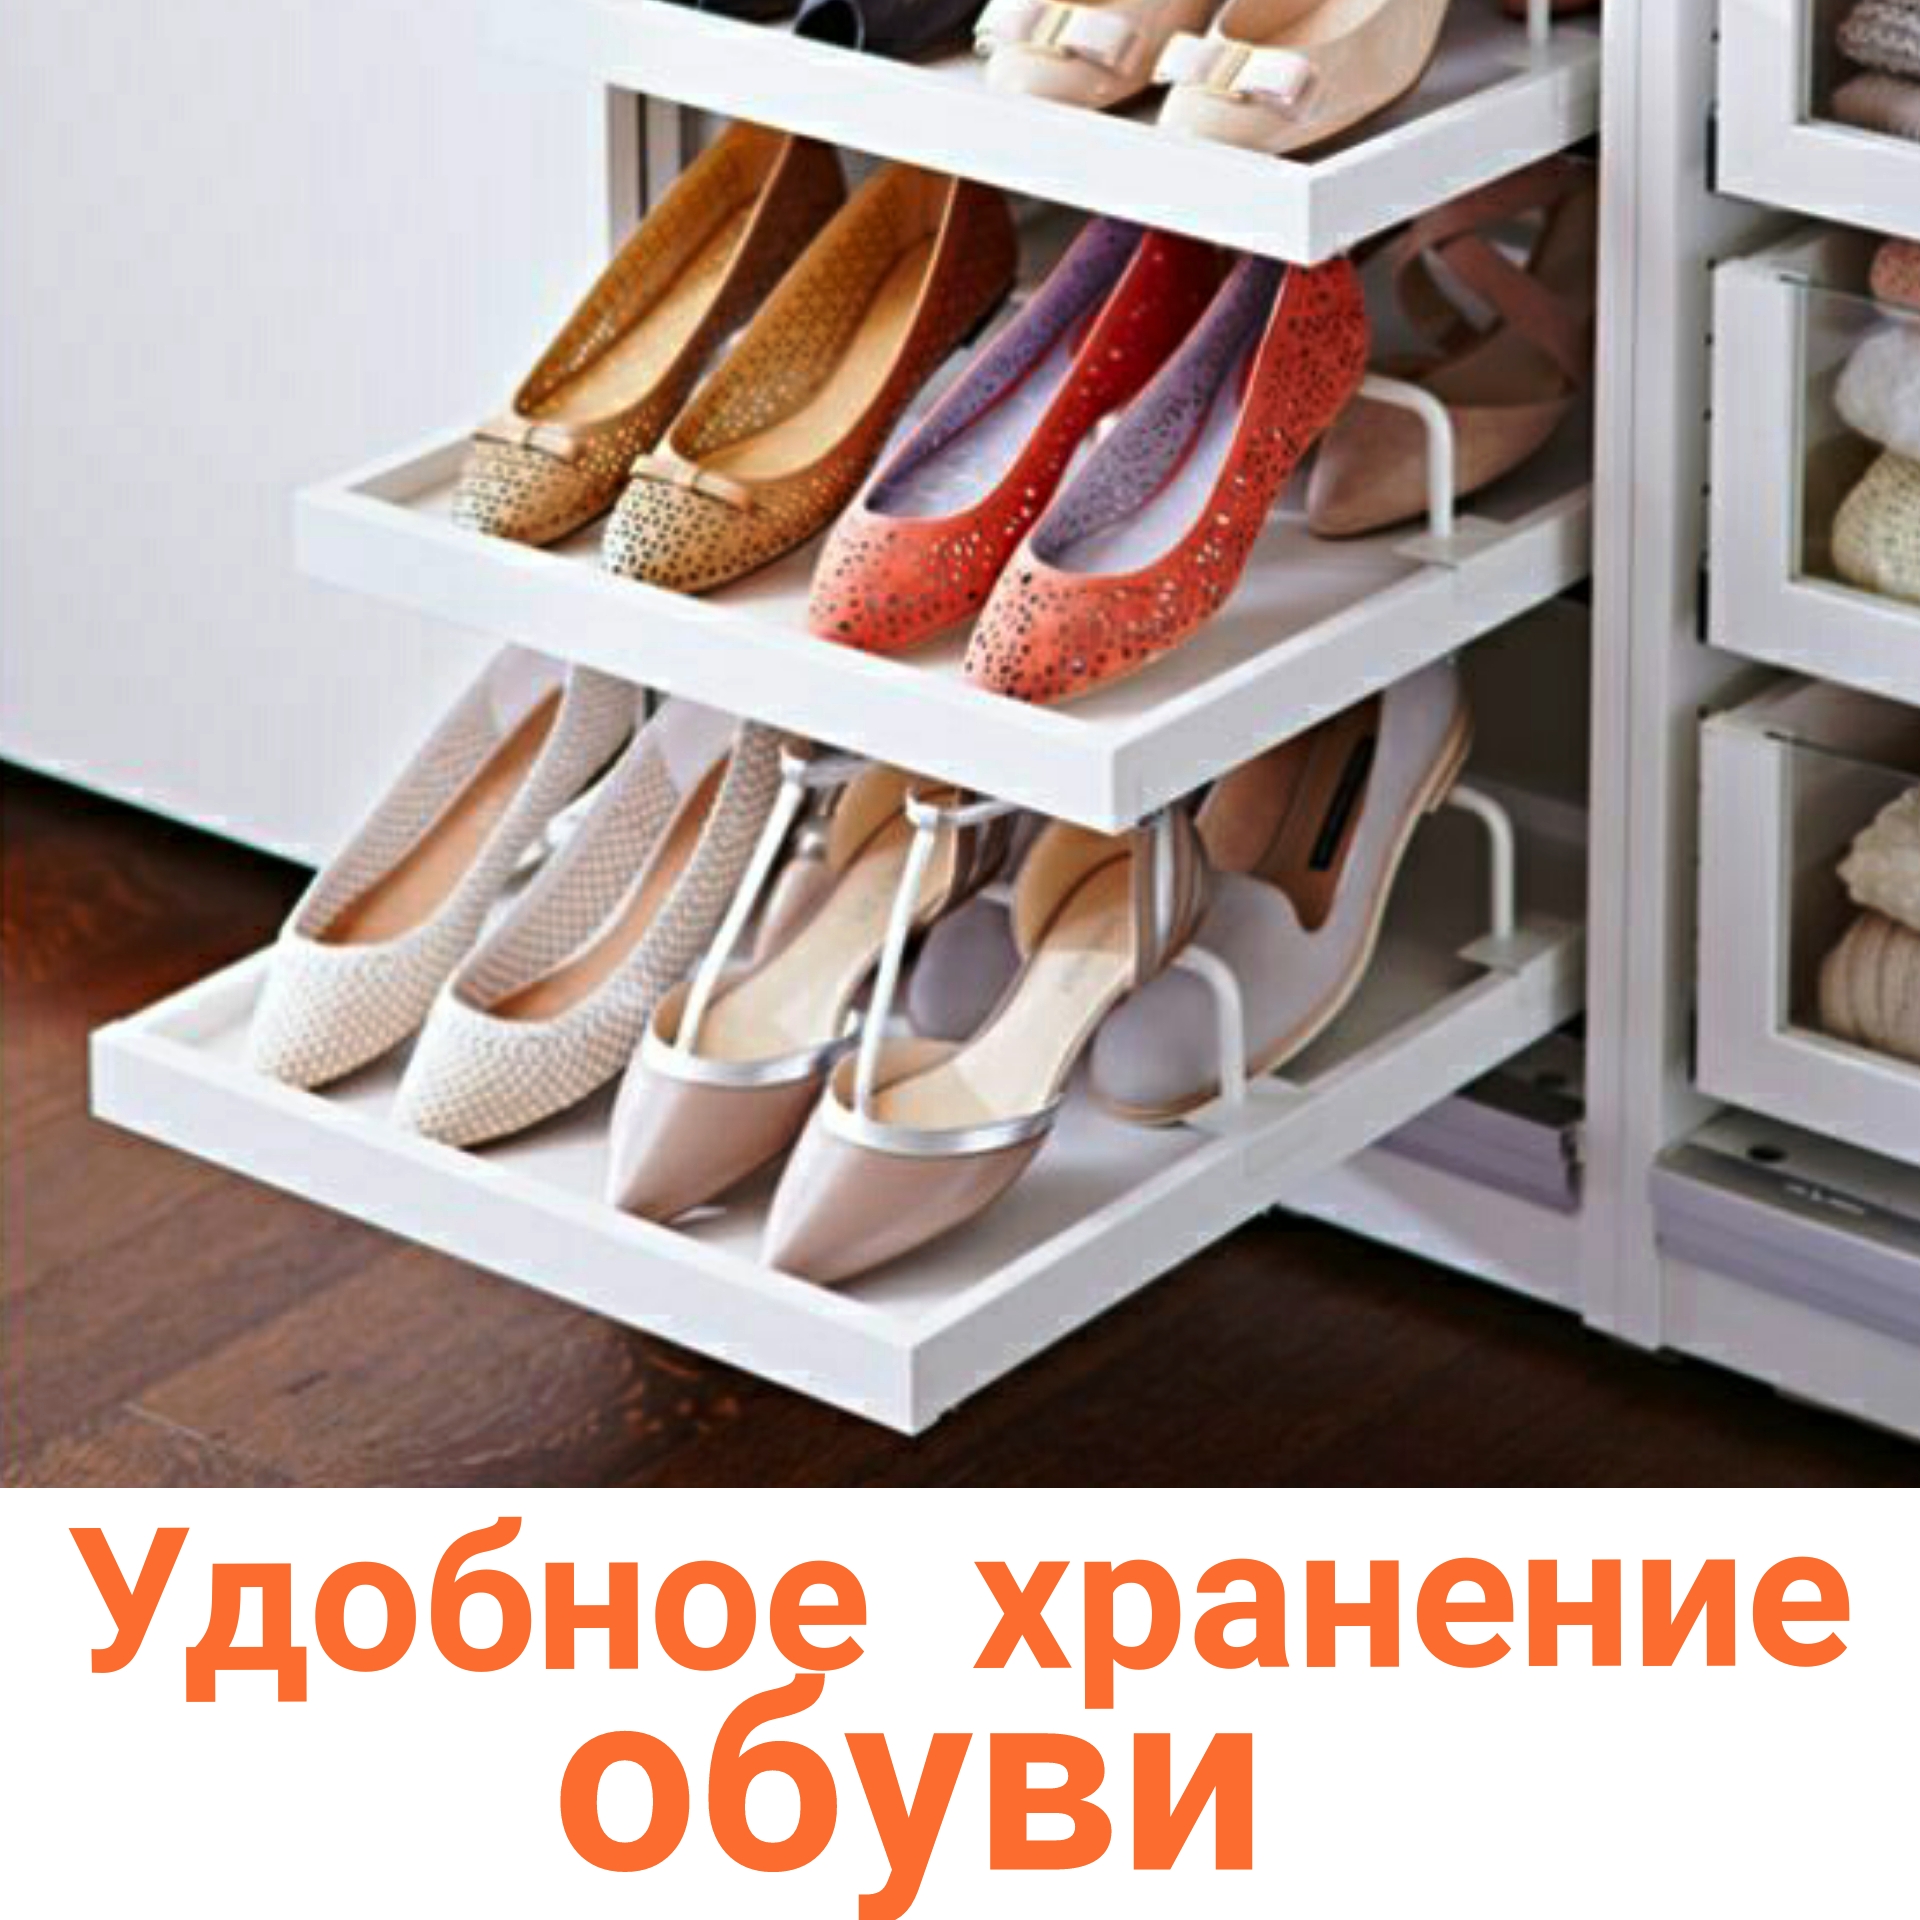 удобная мебель для хранения обуви